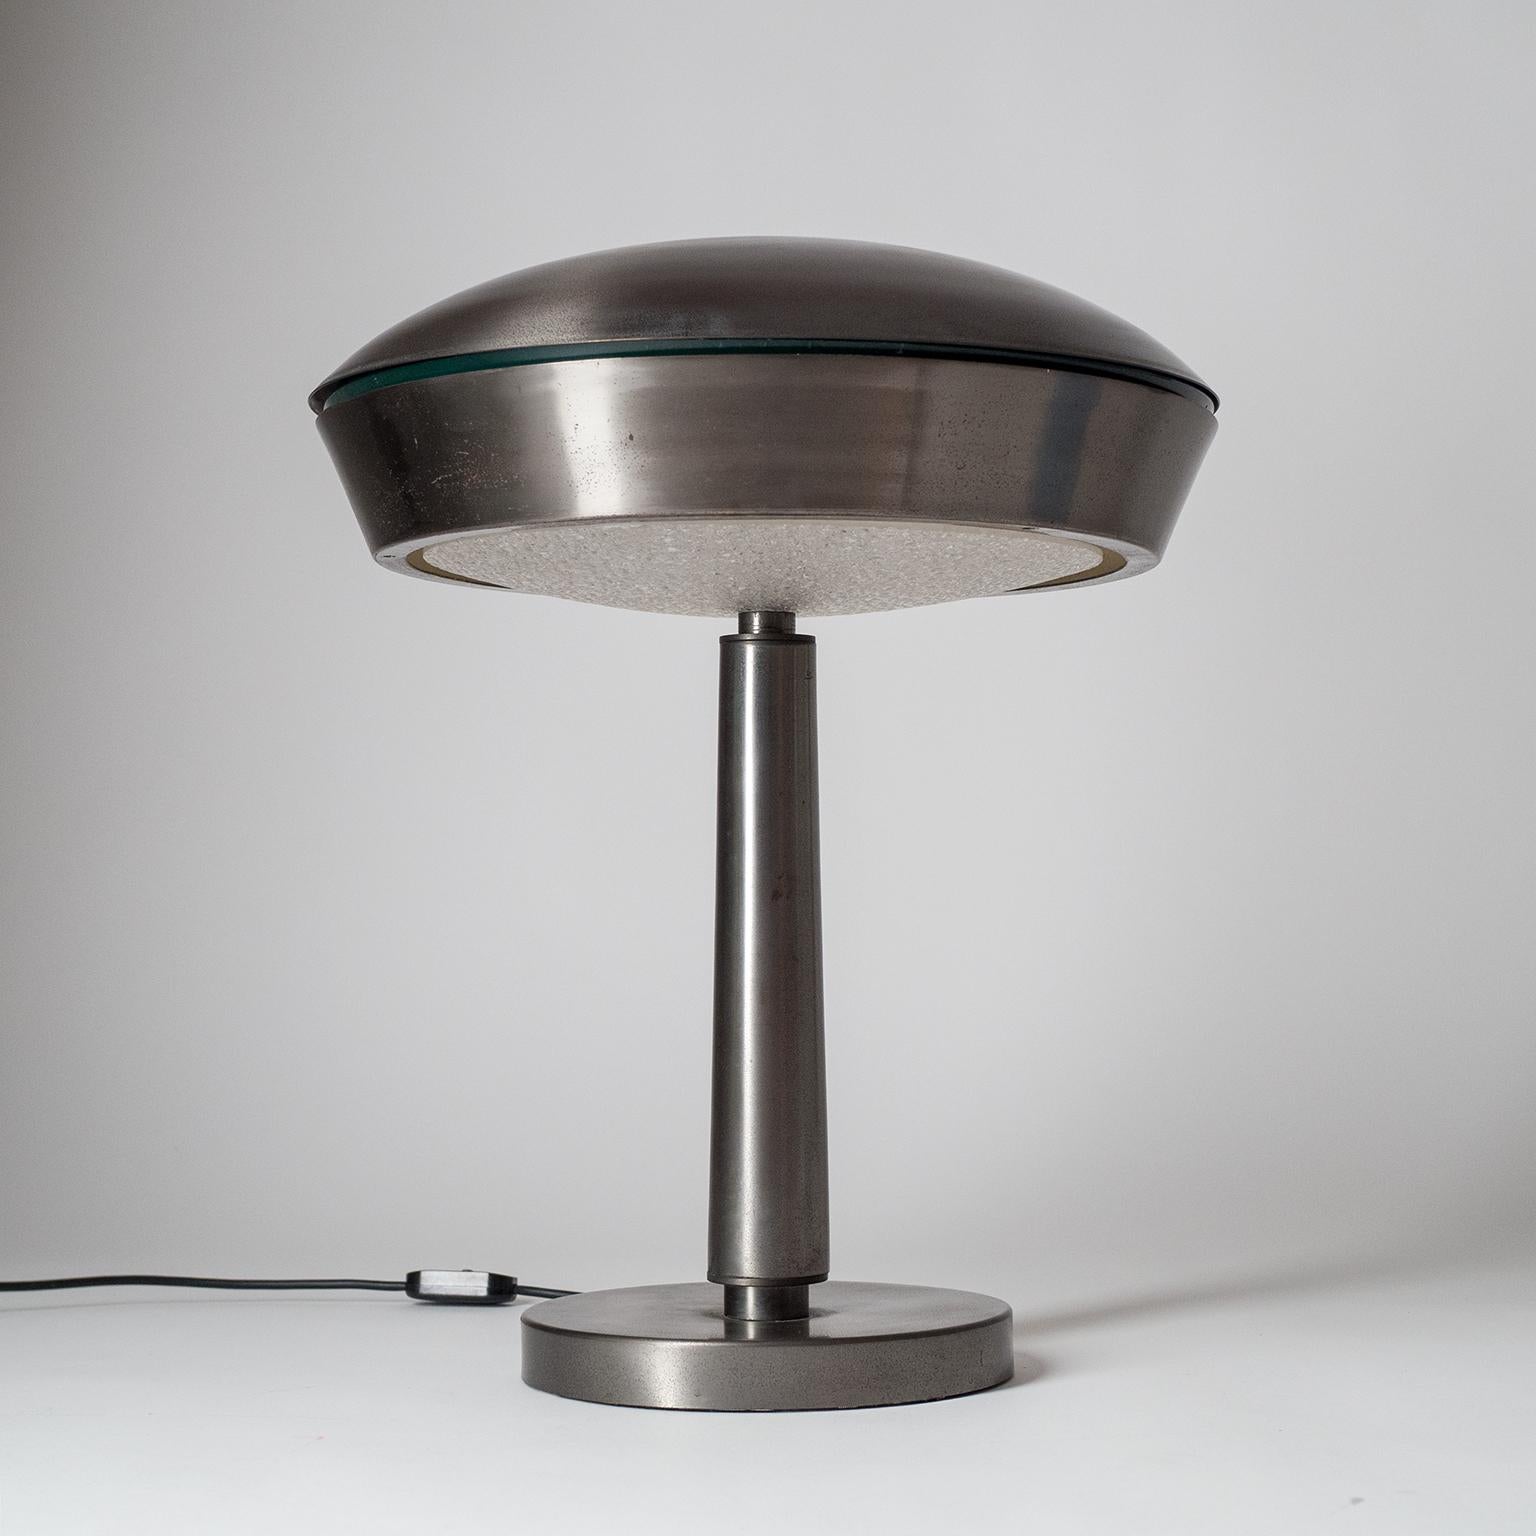 Grande lampe de bureau ou de table en laiton ou bronze patiné attribuée à Fontana Arte, vers 1960 (très similaire au mod. 2278). Laiton patiné foncé avec un éclat argenté et diffuseur acrylique texturé. Trois prises E14.